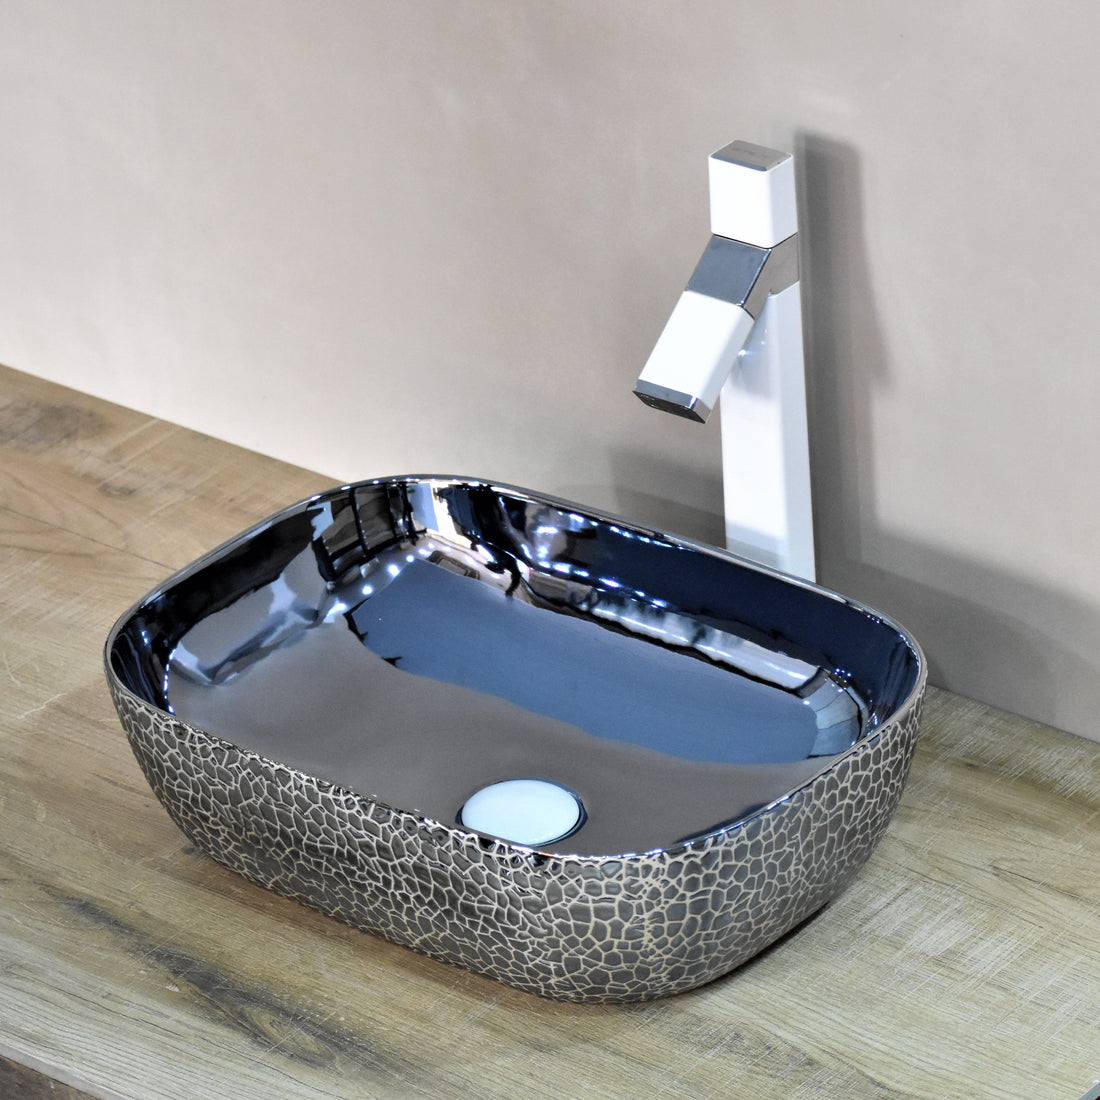 InArt Table Top Wash Basin Design 46 x 33 CM Blue Color - InArt-Studio